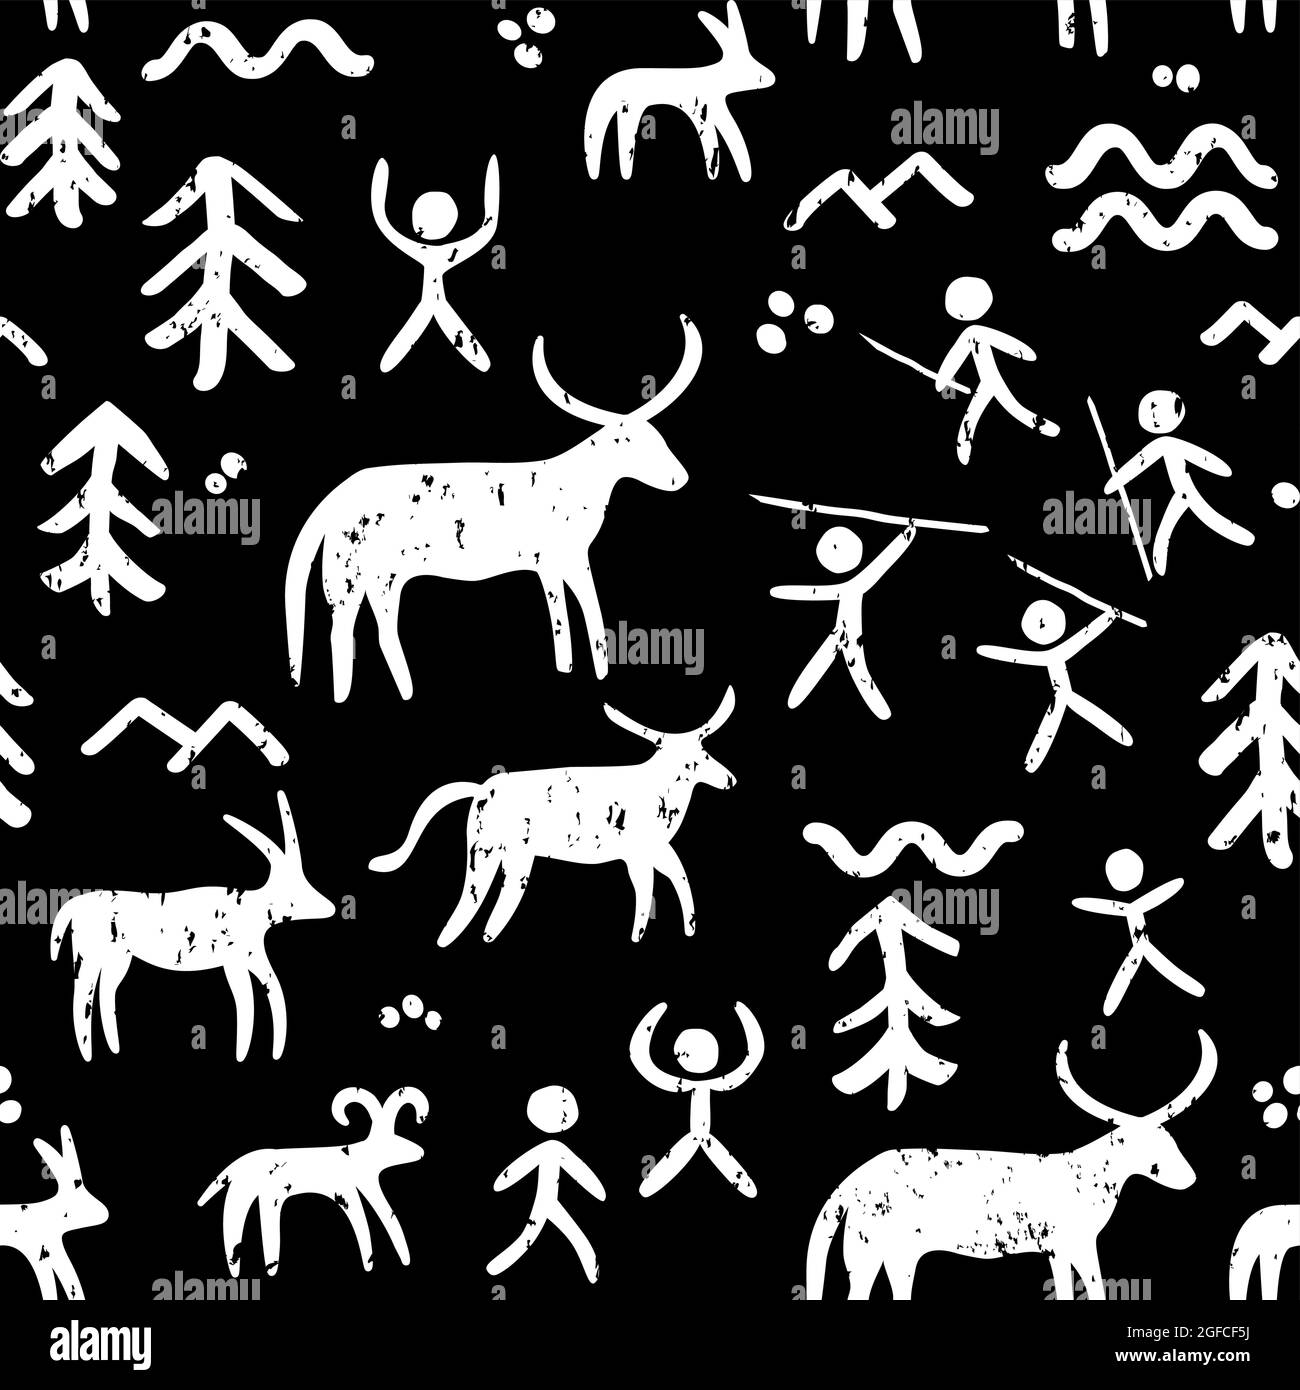 Höhlenmalereien Vektor nahtlose Muster, repetitiven Hintergrund von prähistorischen Kunst mit Höhlenmenschen Jagd Tiere in weiß auf schwarz inspiriert Stock Vektor